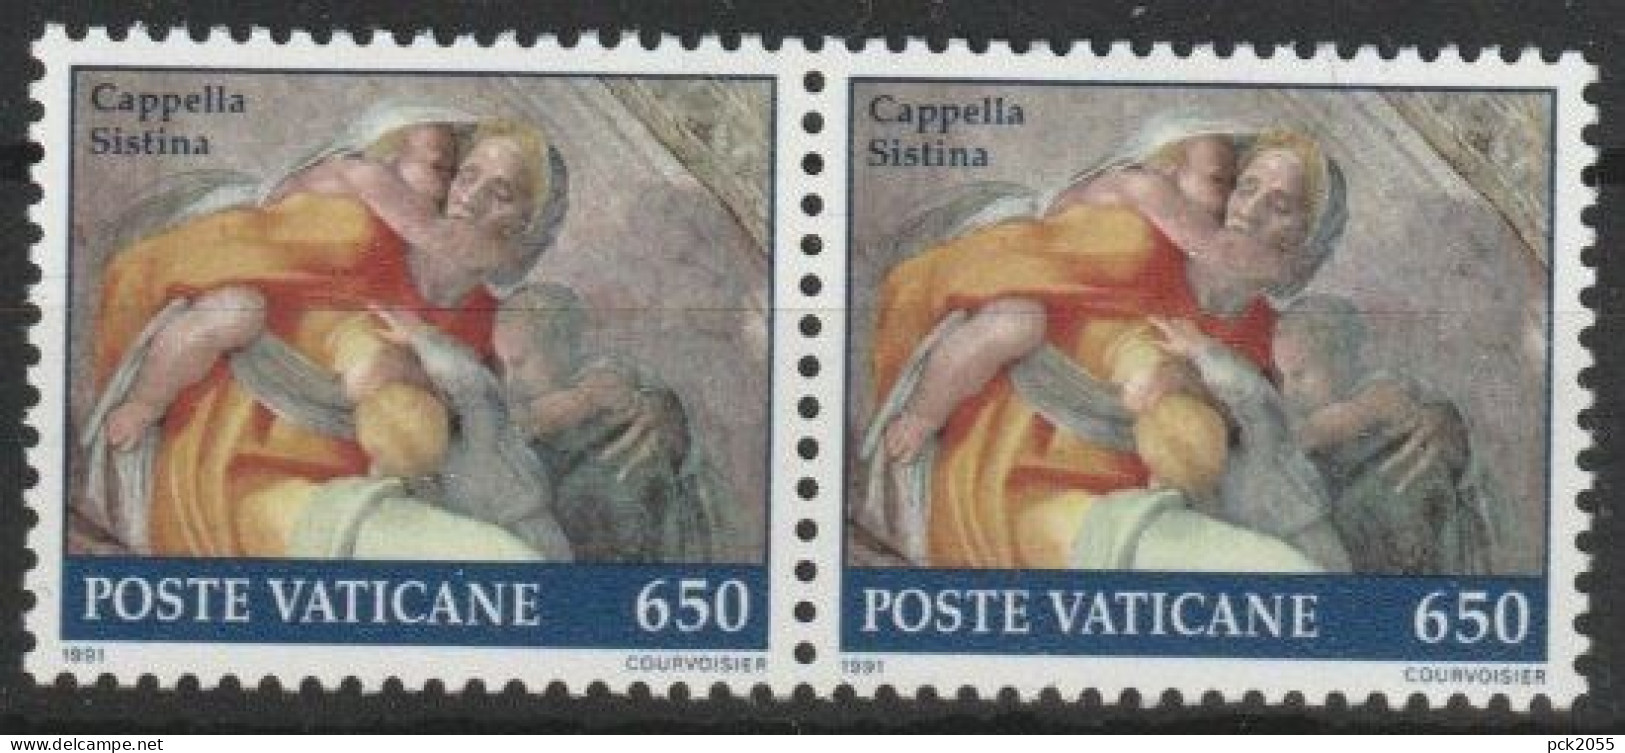 Vatikan 1991 Mi-Nr.1030 Paar ** Postfrisch  Restaurierung Der Sixtinischen Kapelle  ( B2873 )günstige Versandkosten - Ungebraucht